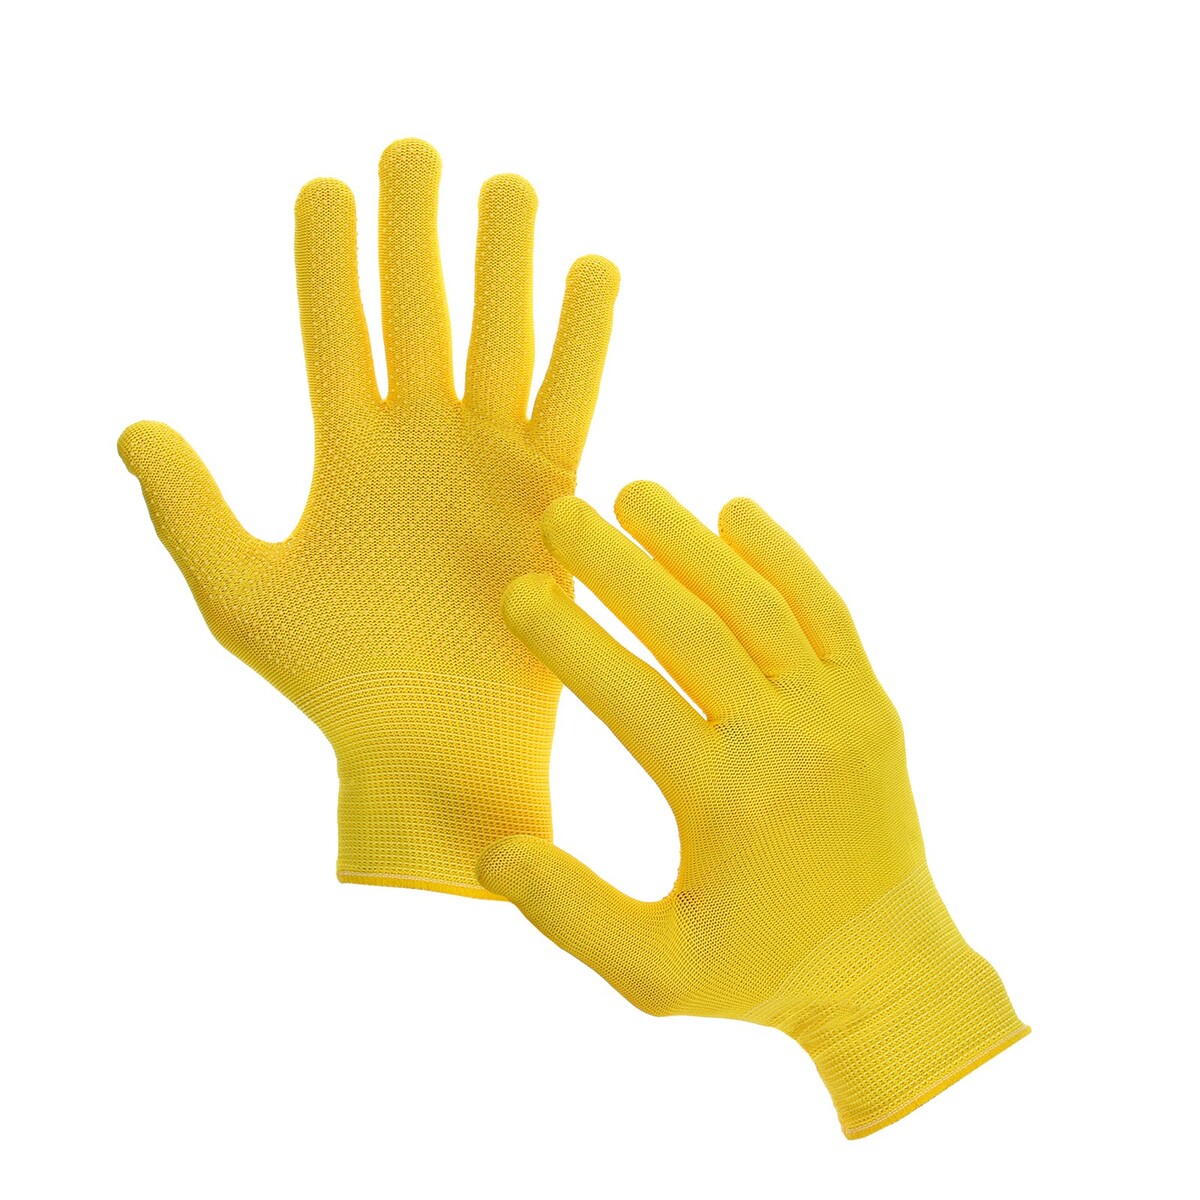 Перчатки рабочие, х/б, с нейлоновой нитью, с пвх точками, размер 9, желтые, greengo перчатки рабочие х б с нейлоновой нитью с пвх точками размер 9 желтые greengo